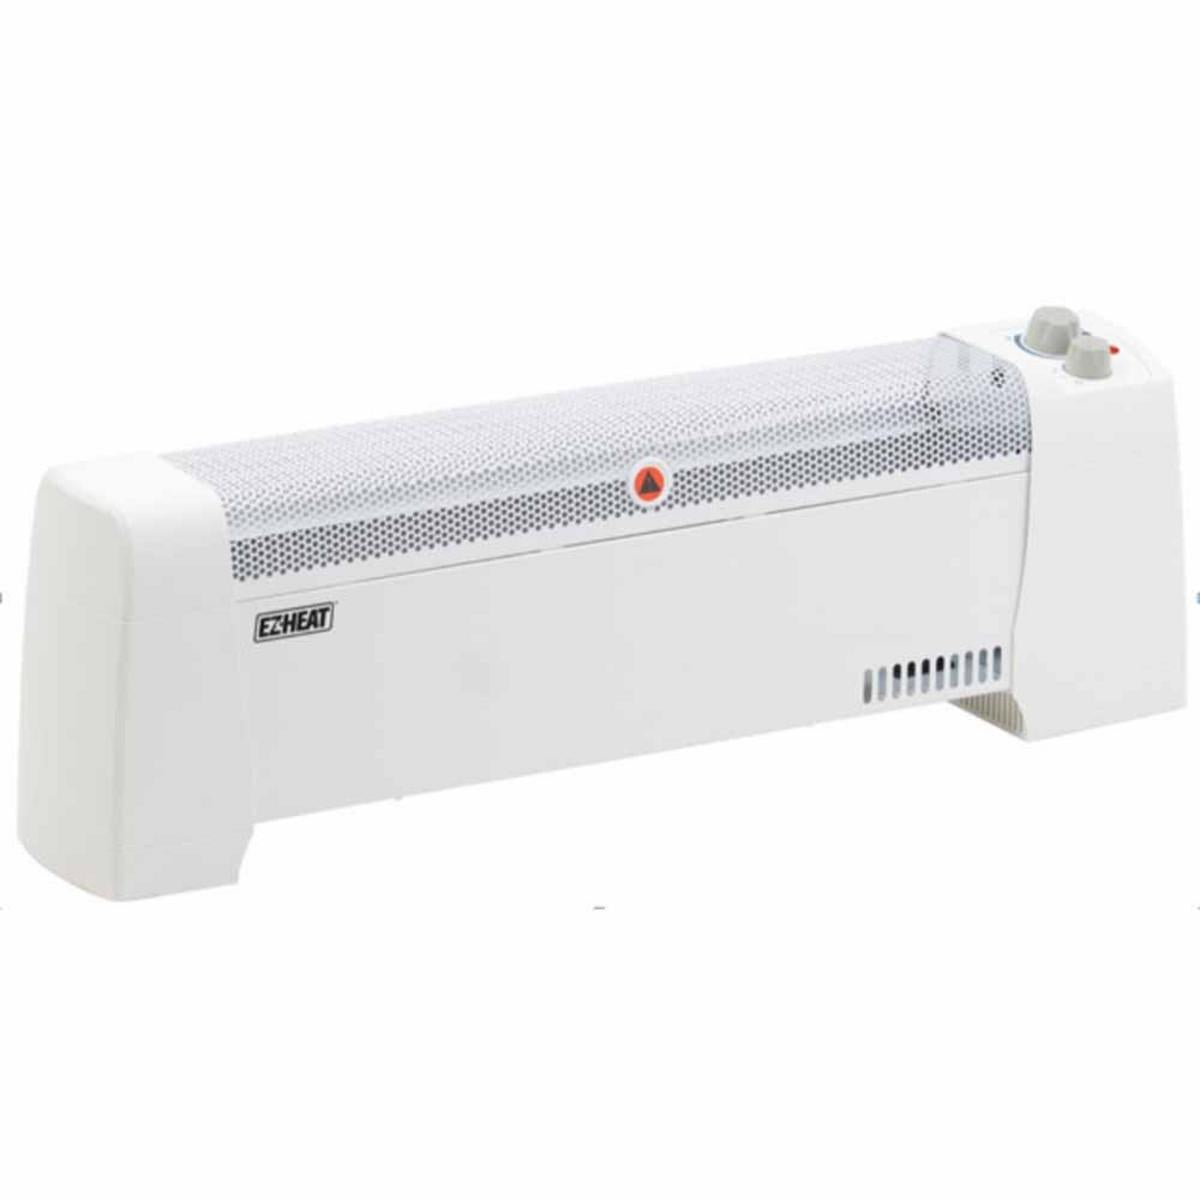 EZ Heat Baseboard Heater